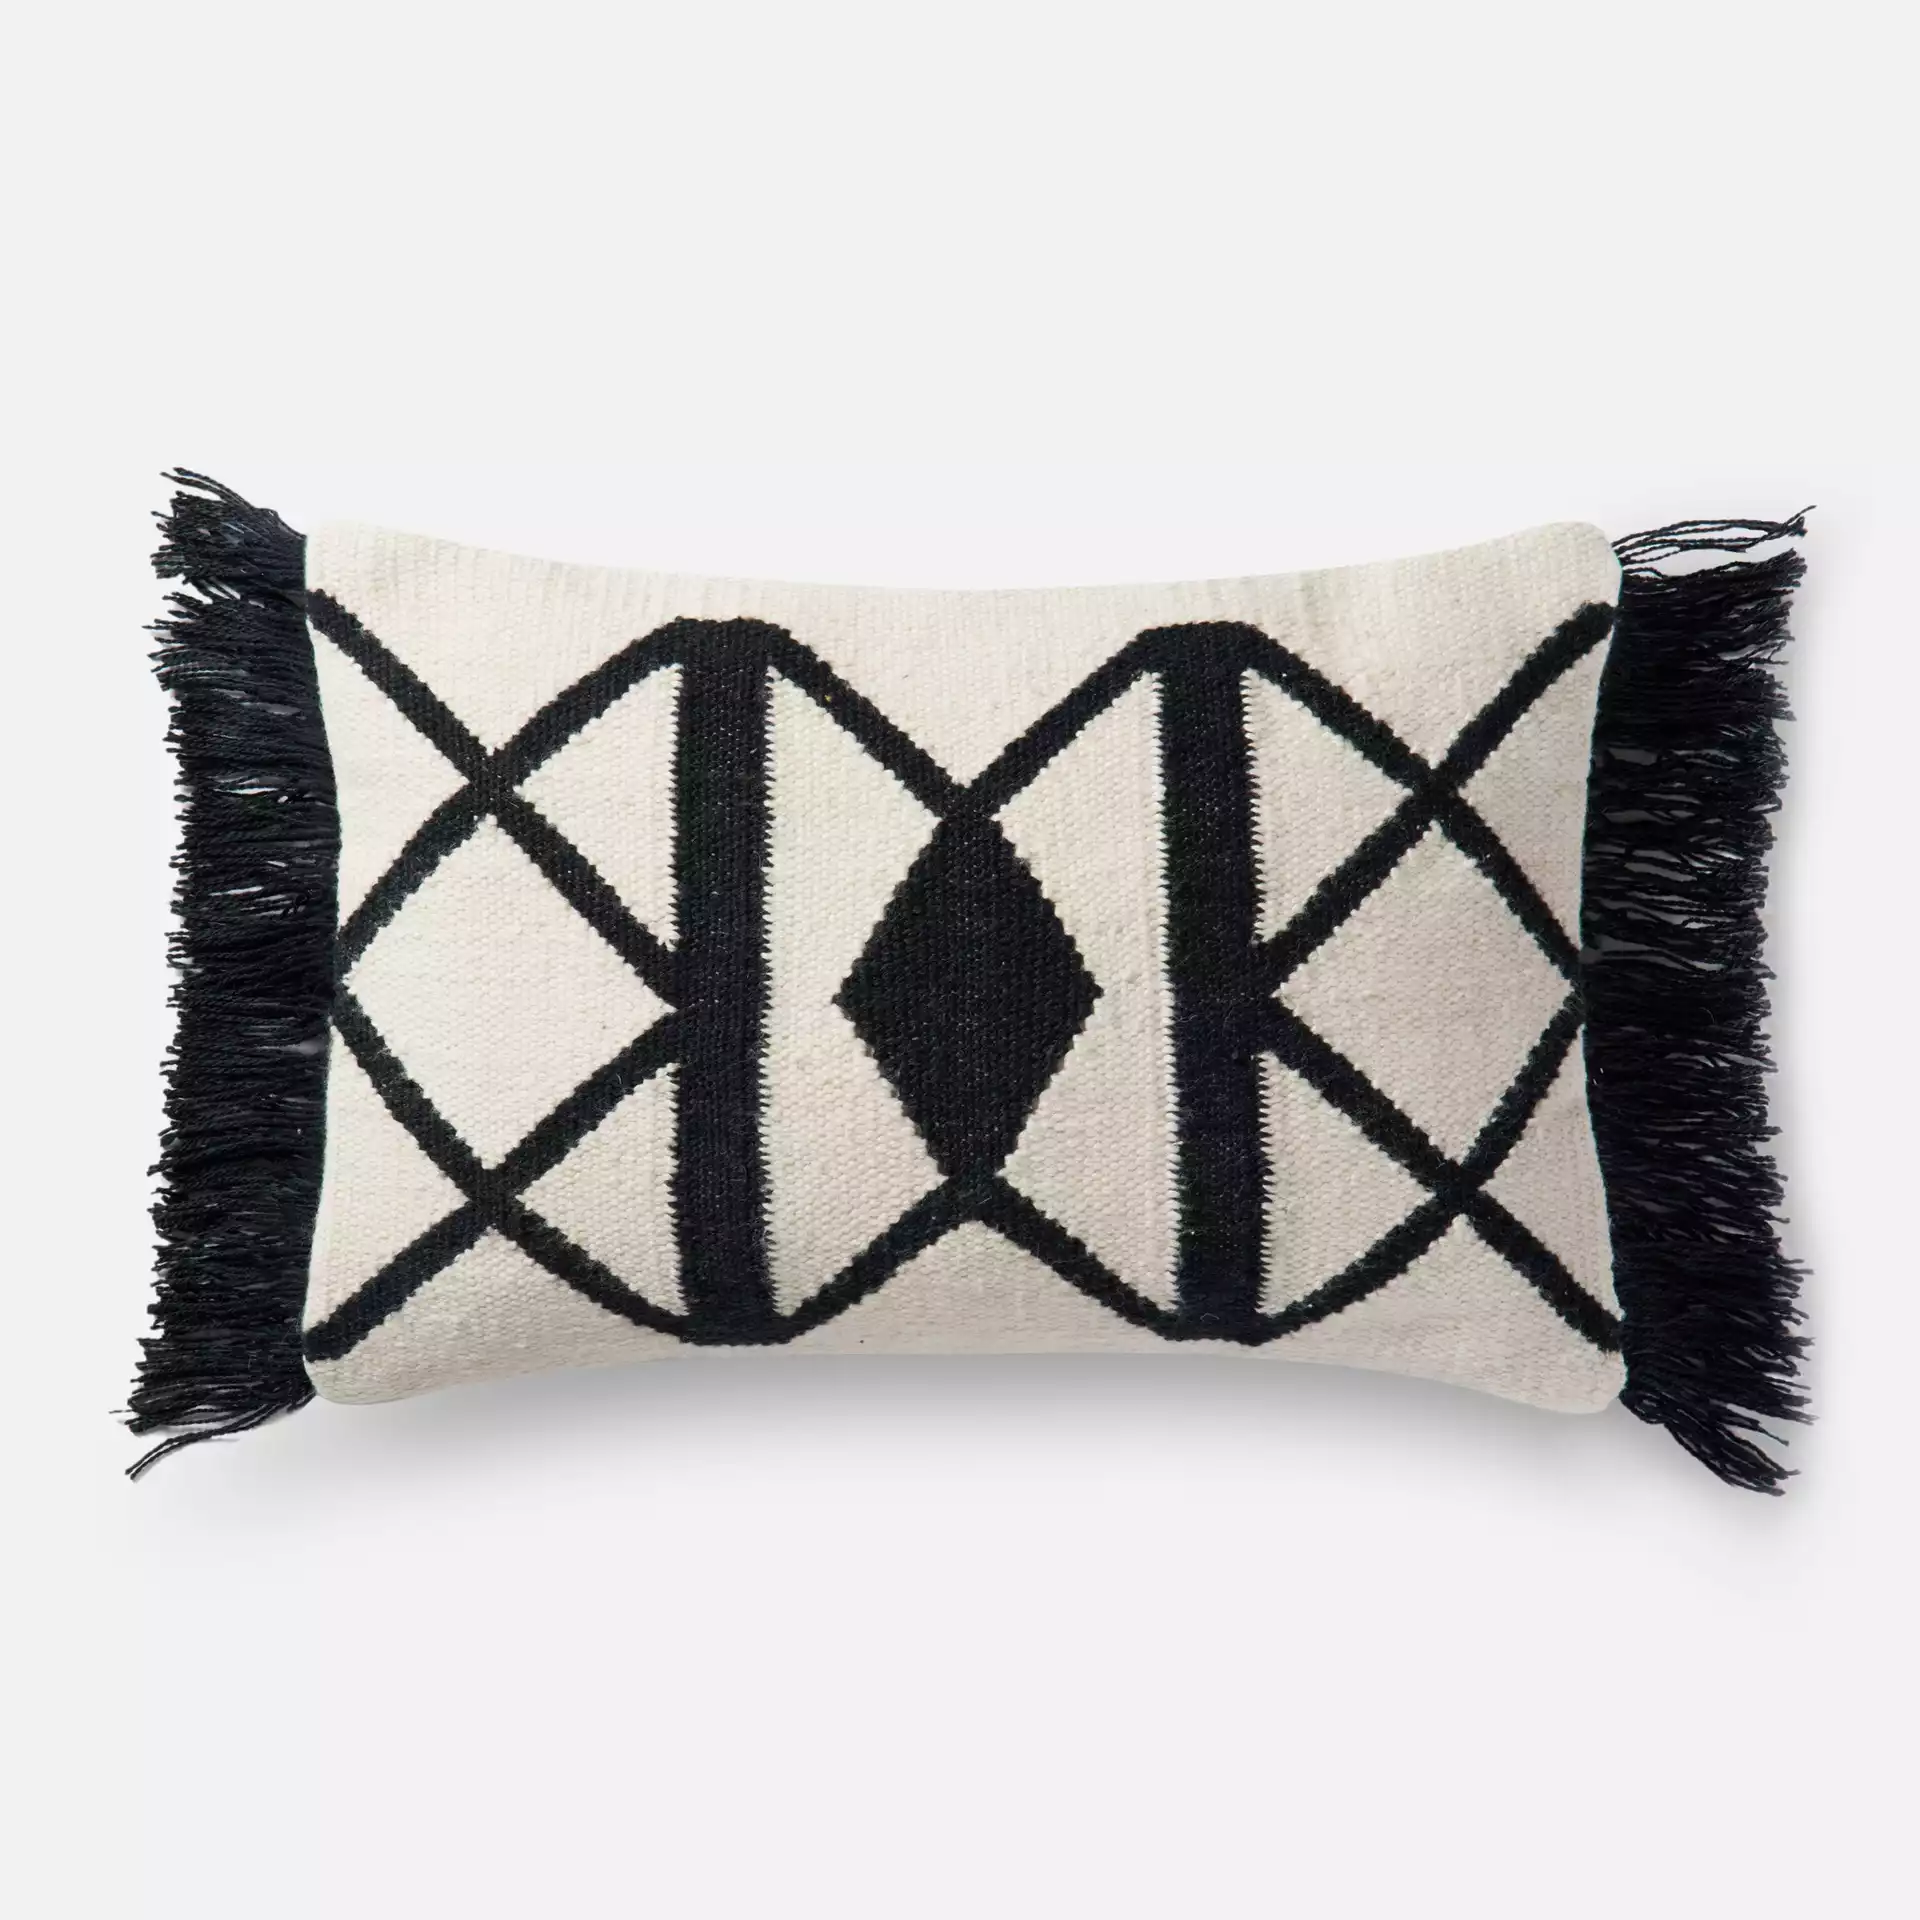 Gotland Lumbar Pillow Cover, 21" x 13"